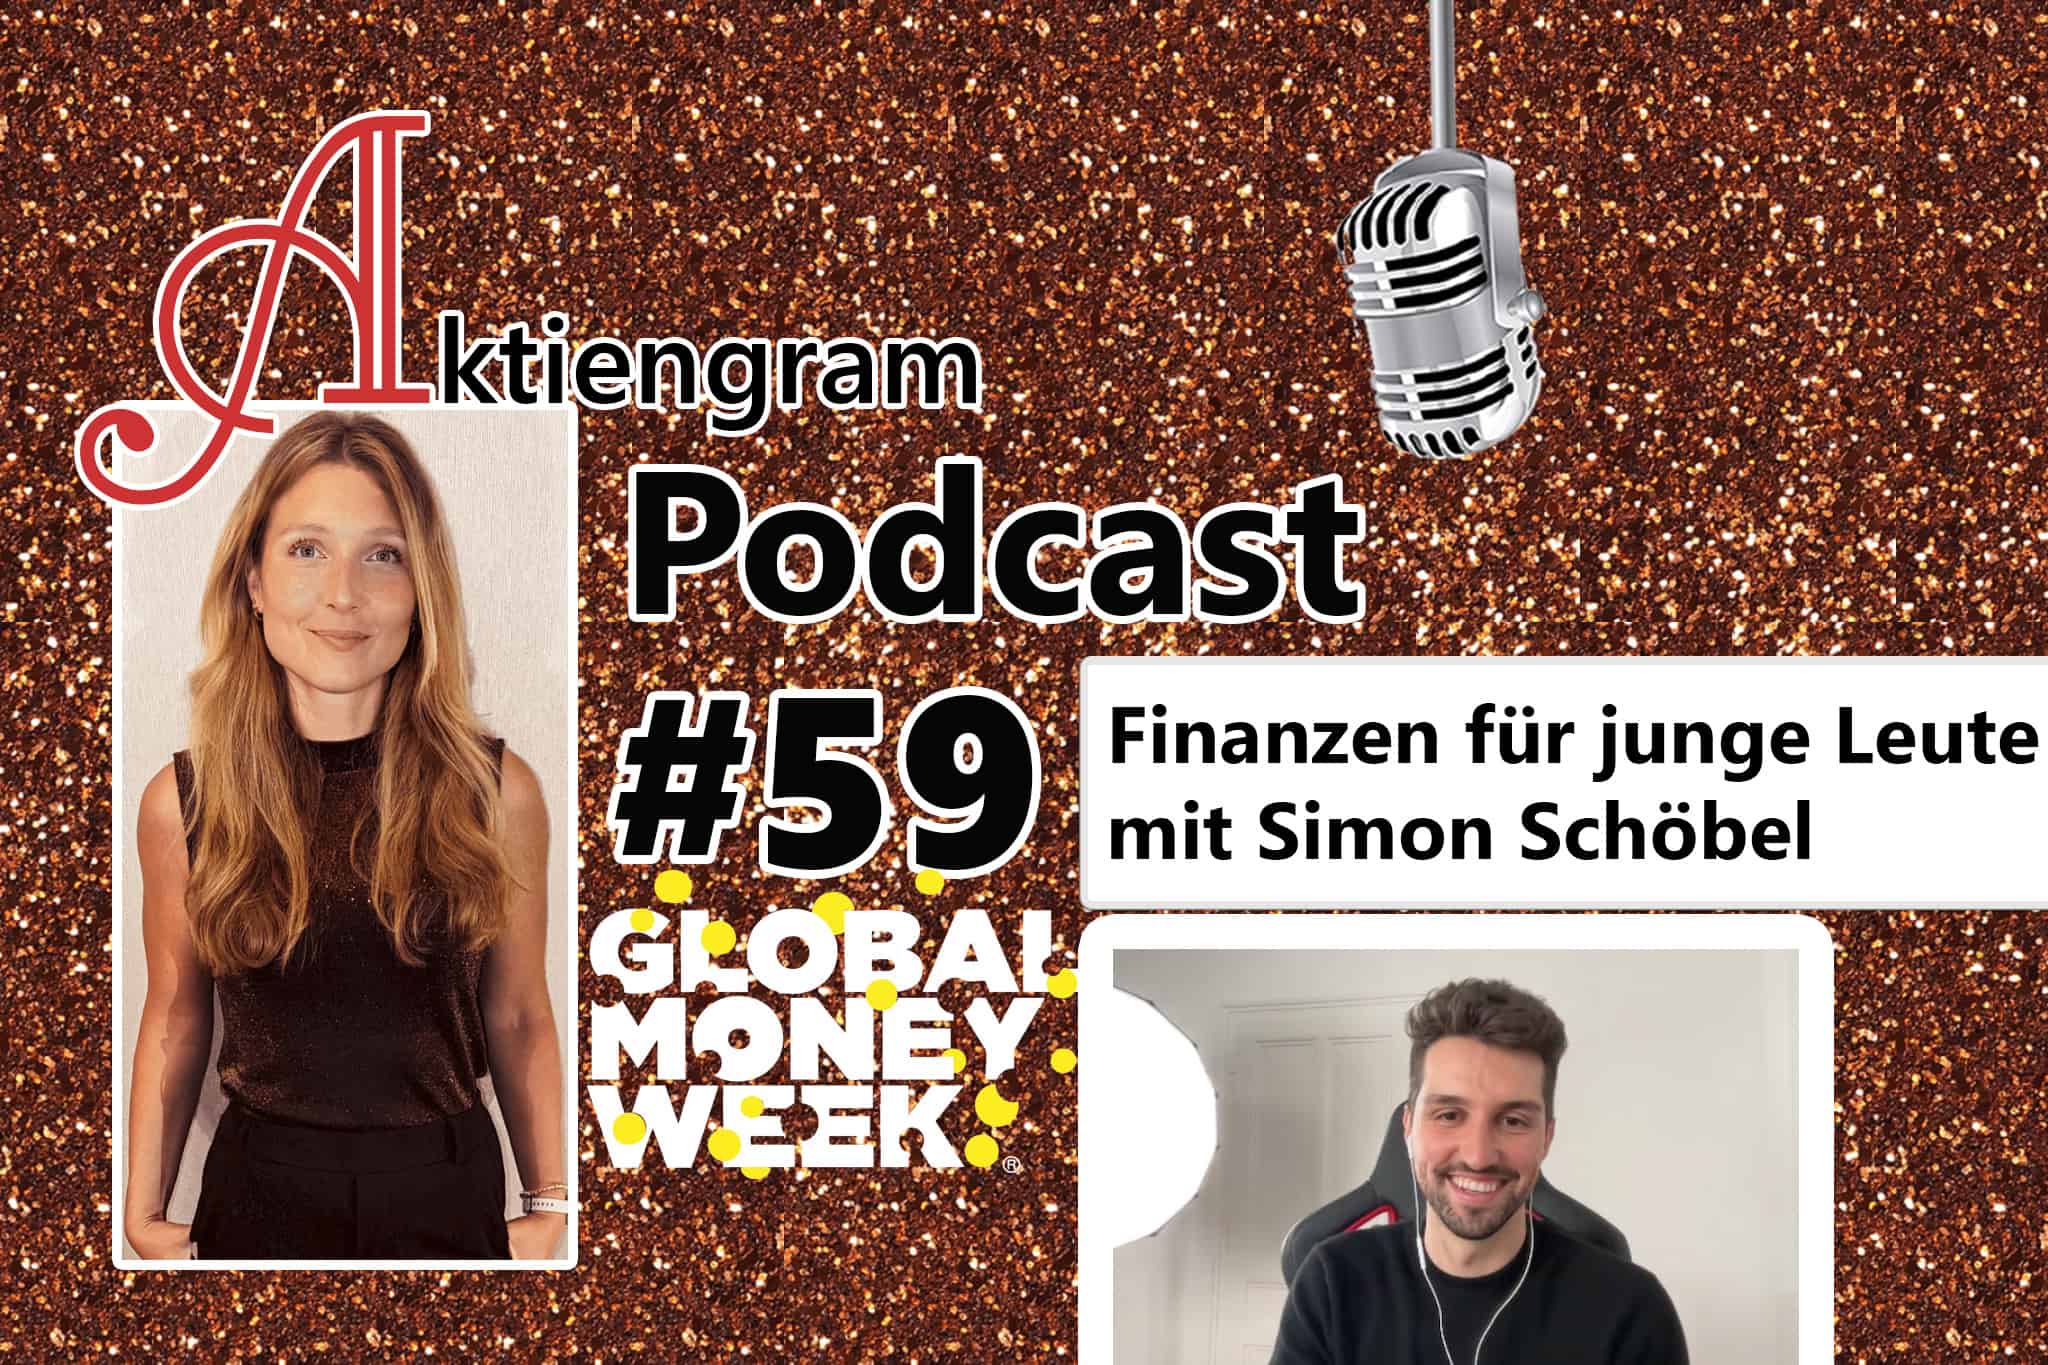 Aktiengram Podcast 59 Finanzen für junge Leute